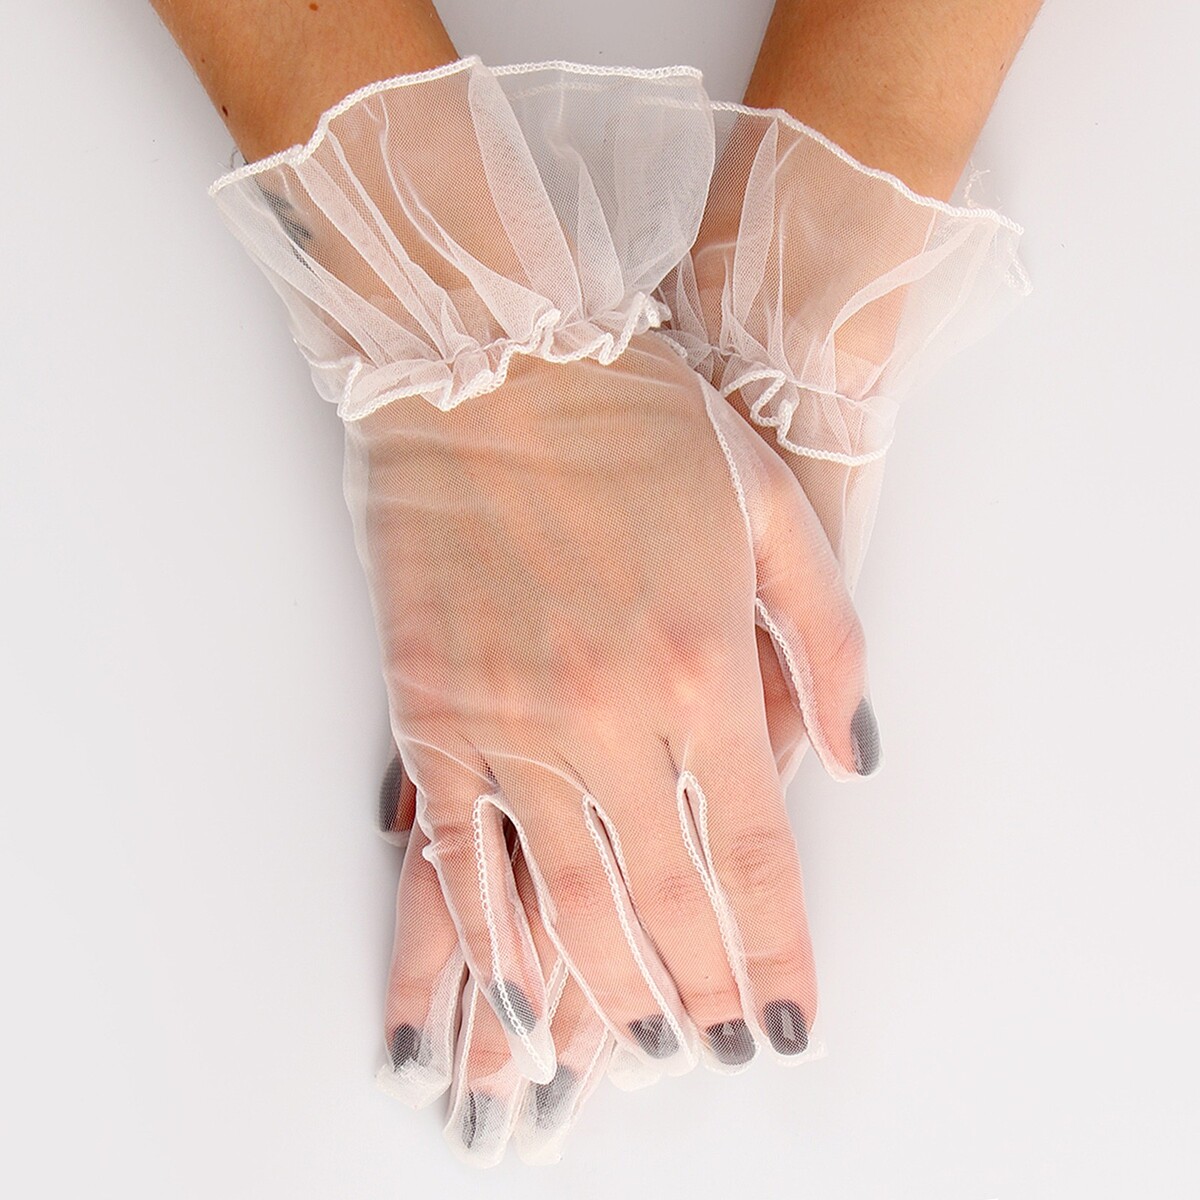 Карнавальный аксессуар - перчатки прозрачные с юбочкой, цвет белый карнавальный аксессуар перчатки прозрачные с юбочкой зеленый